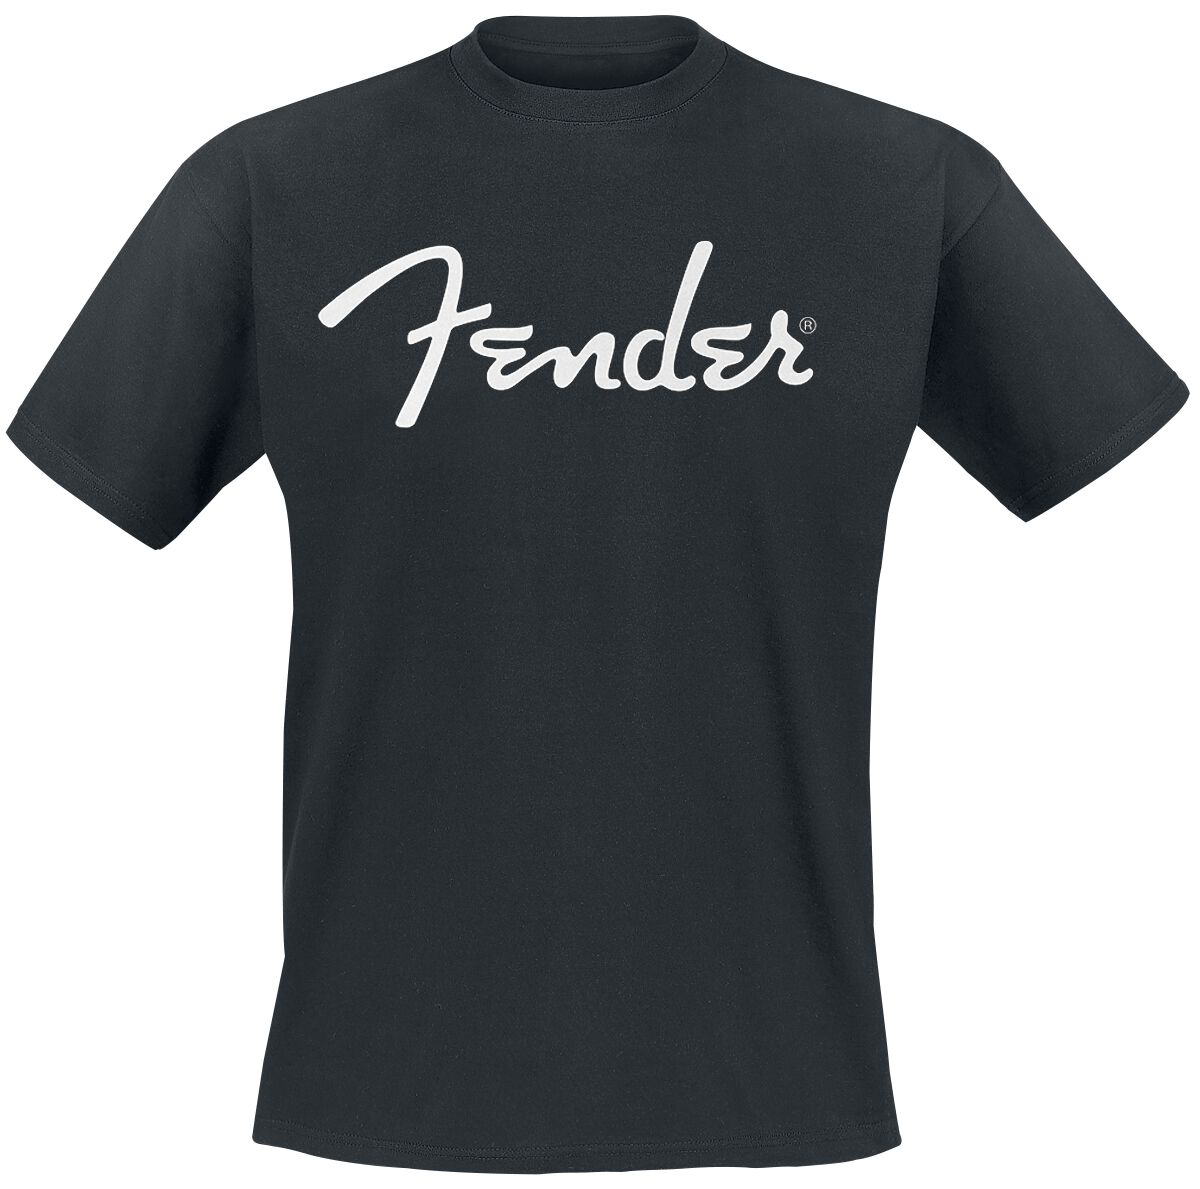 Fender T-Shirt - Classic Logo - S bis XXL - für Männer - Größe L - schwarz  - Lizenziertes Merchandise!